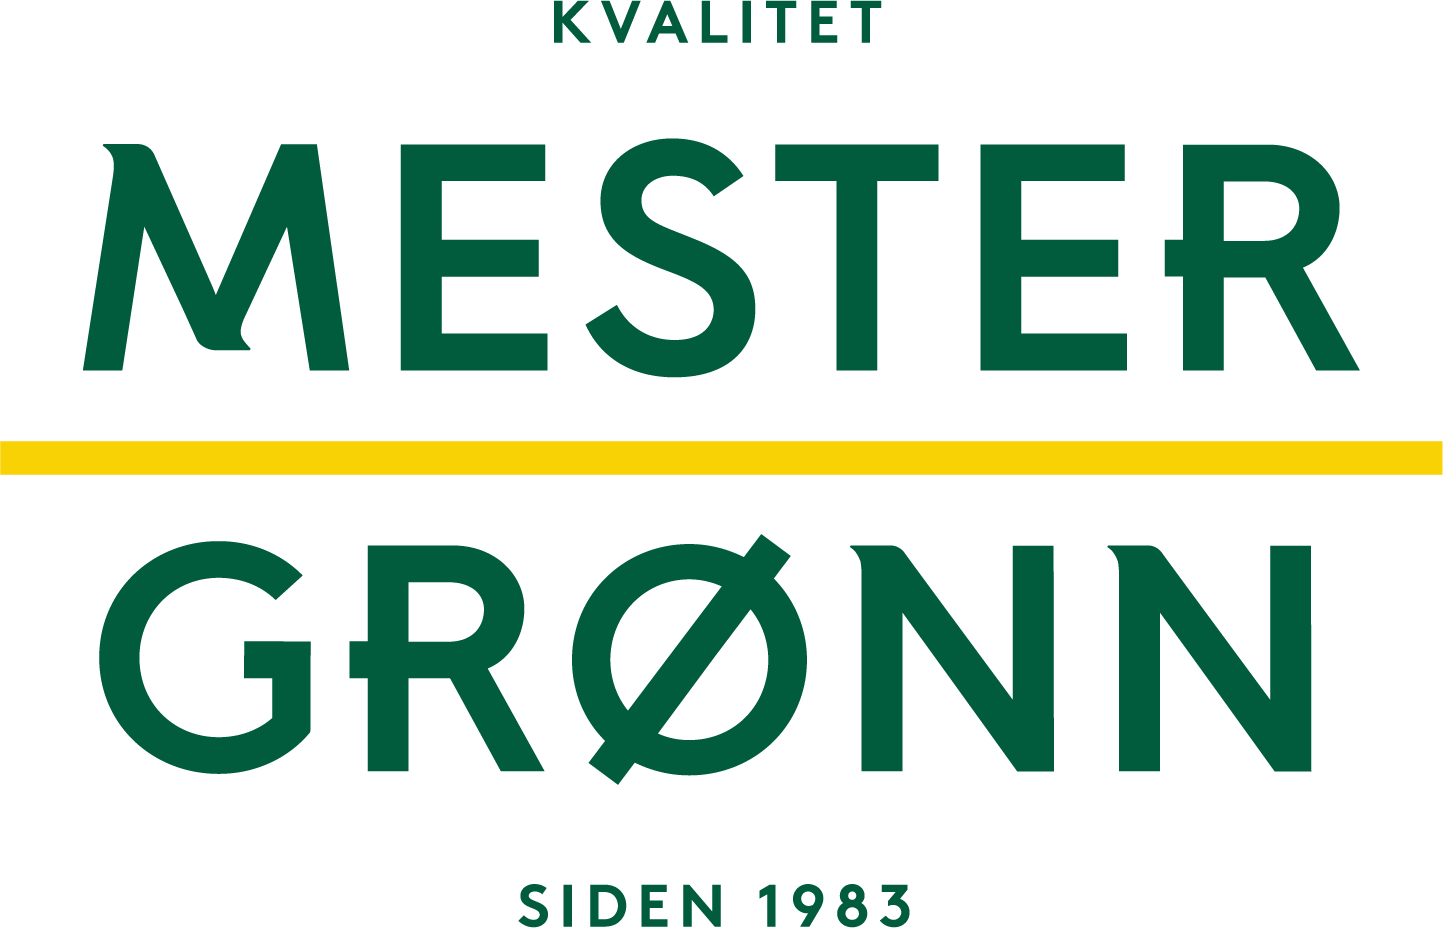 Logo til Mester Grønn